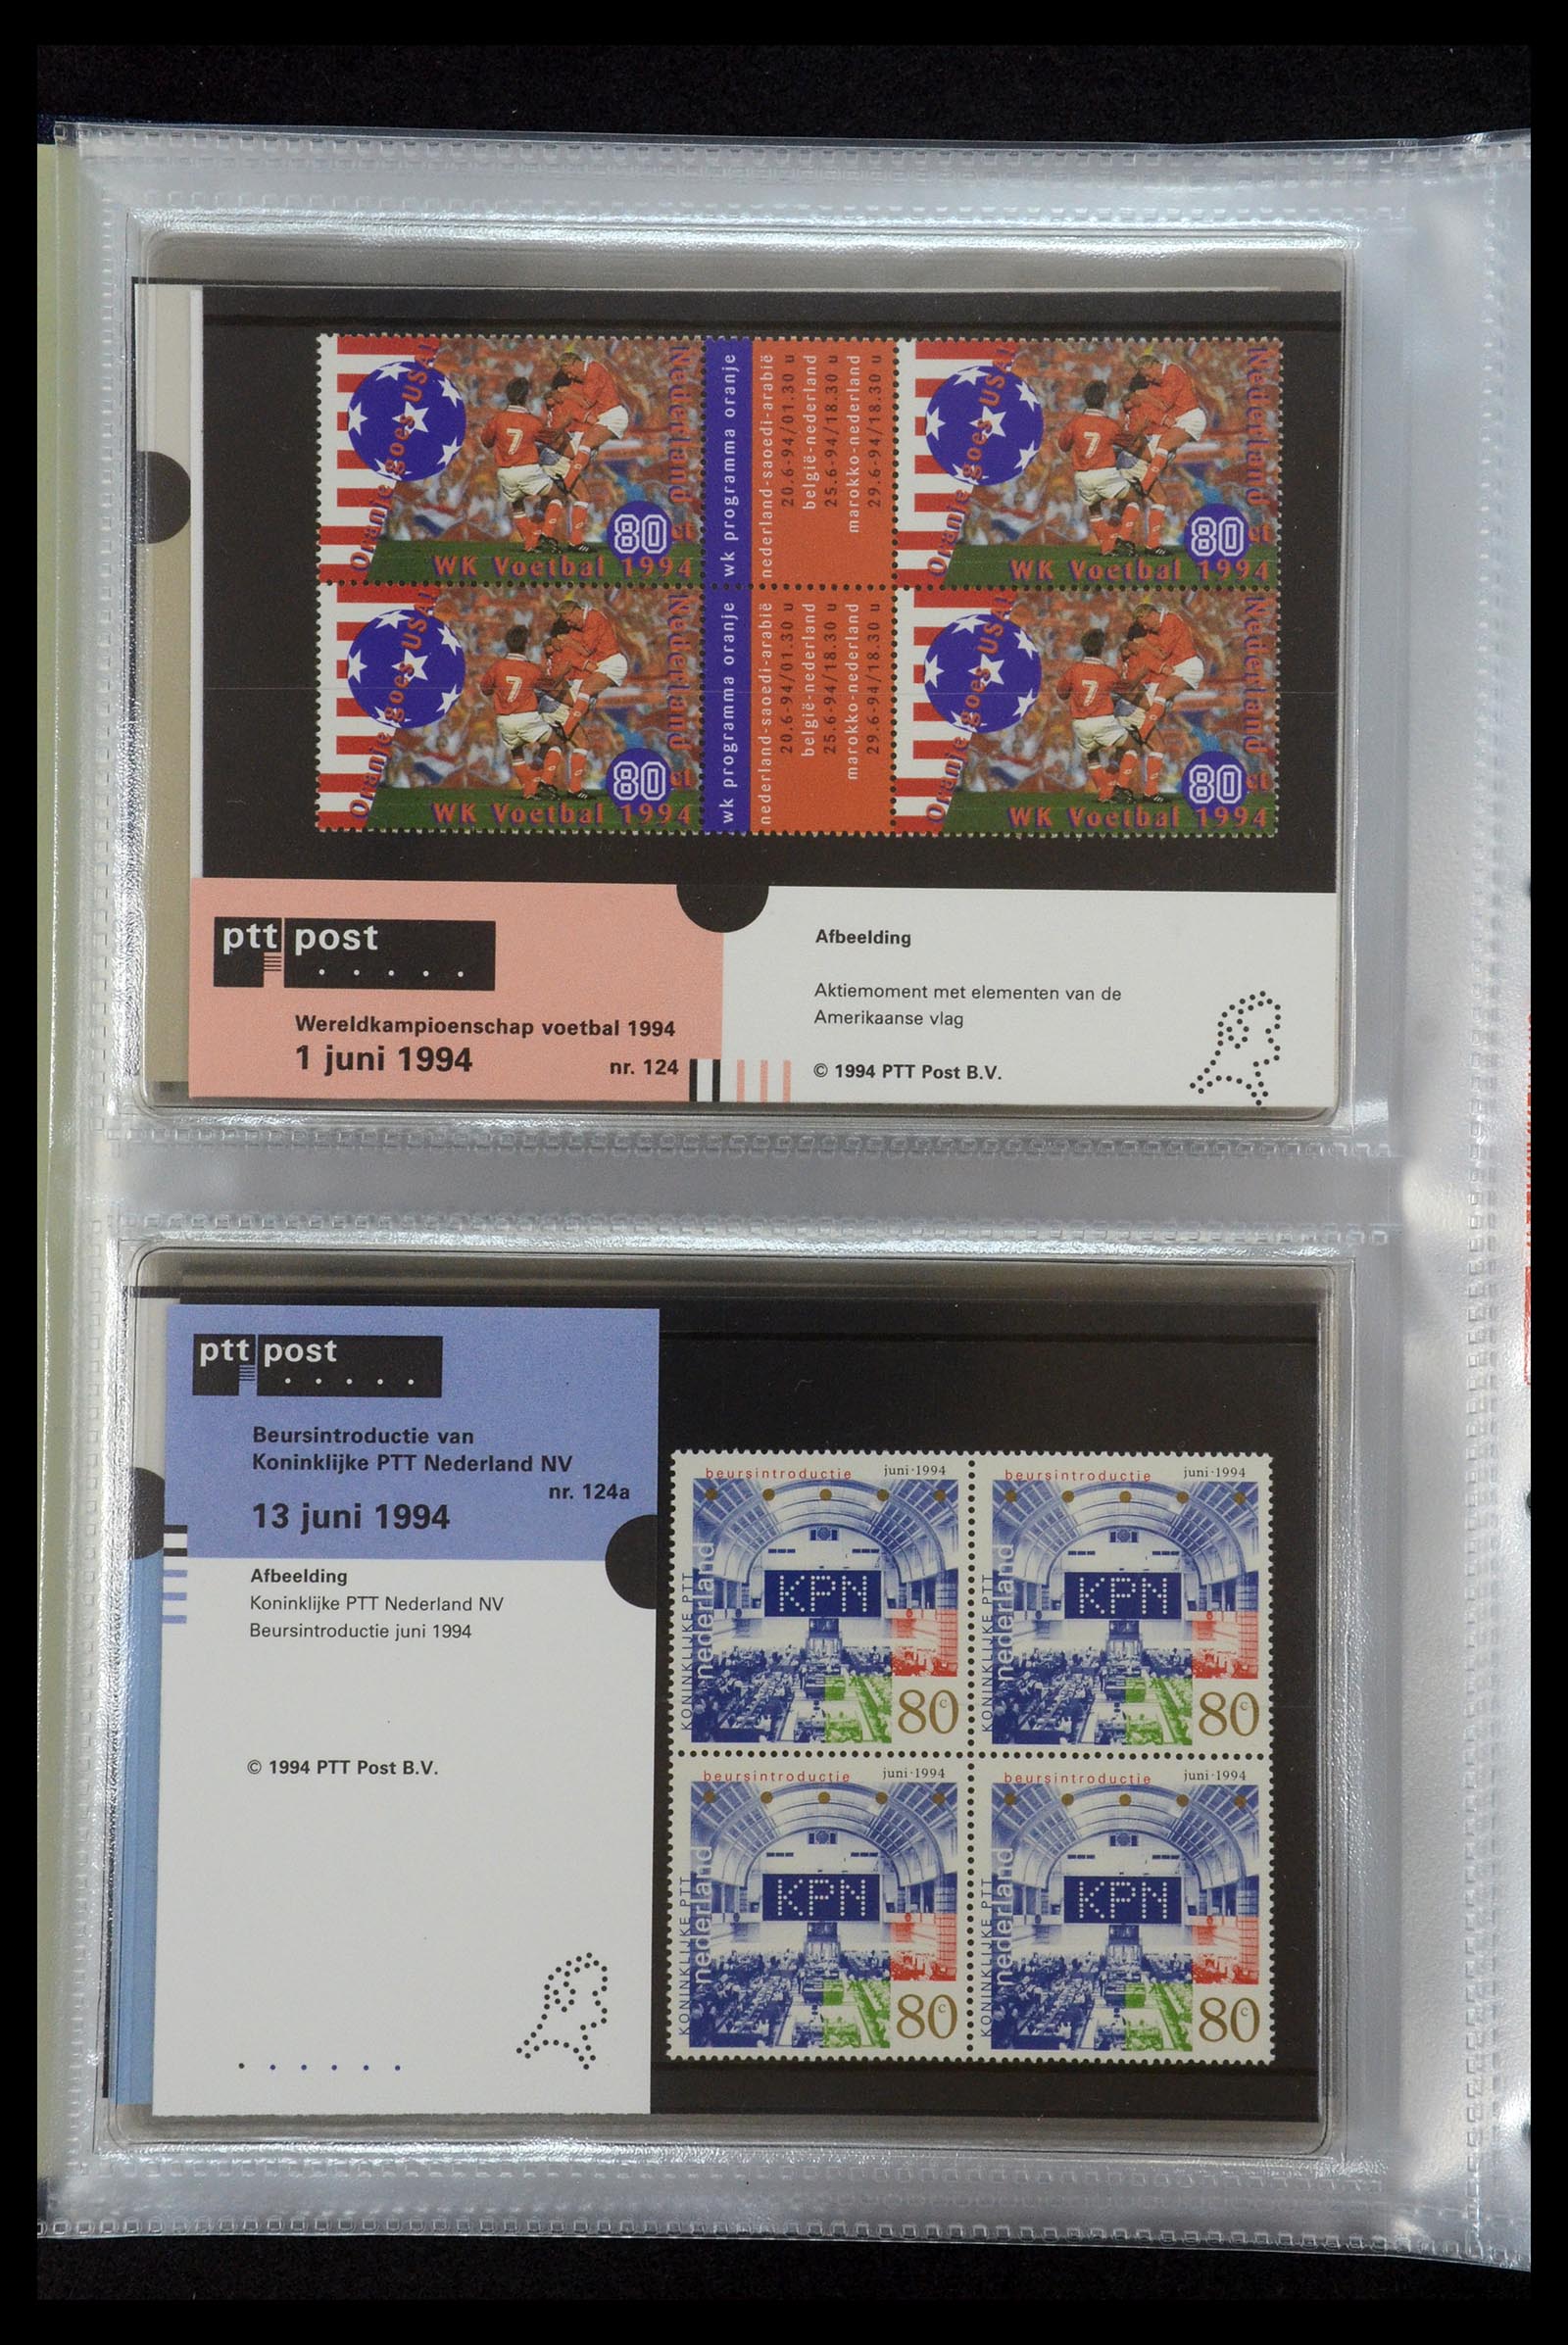 35144 064 - Stamp Collection 35144 Netherlands PTT presentation packs 1982-2021!